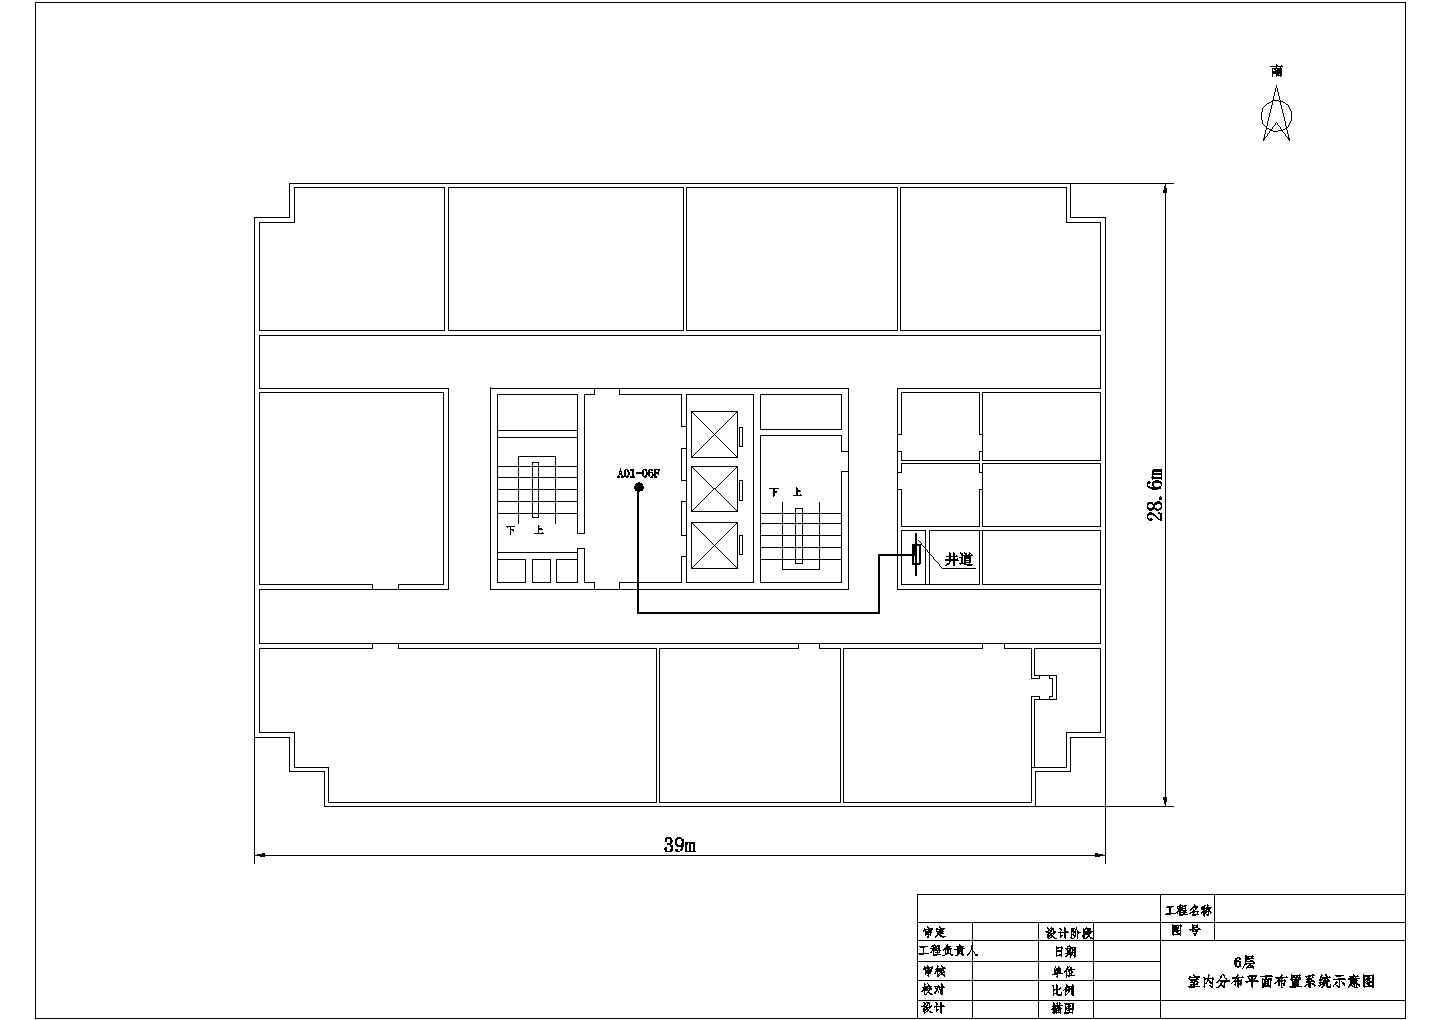 海关大厦6F偶数层天线分布图CAD图纸